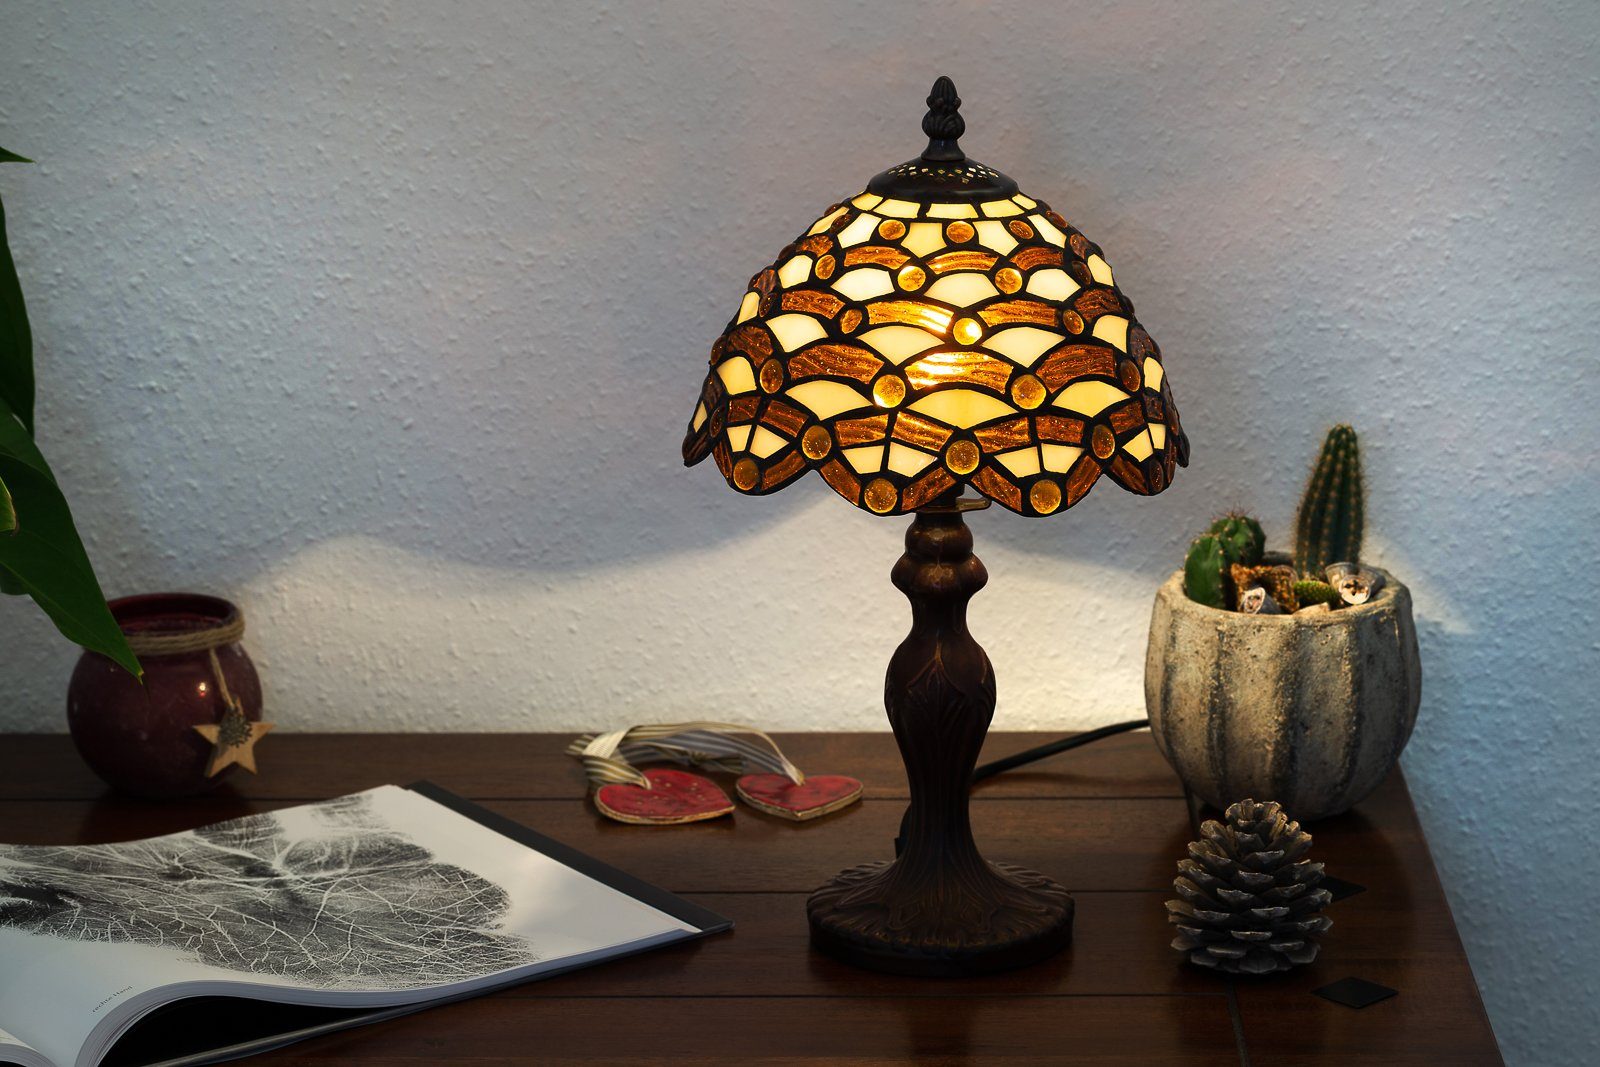 BIRENDY Stehlampe Tischlampe Tiffany Ti156 Lampe Waben Dekorationslampe Steine Motiv